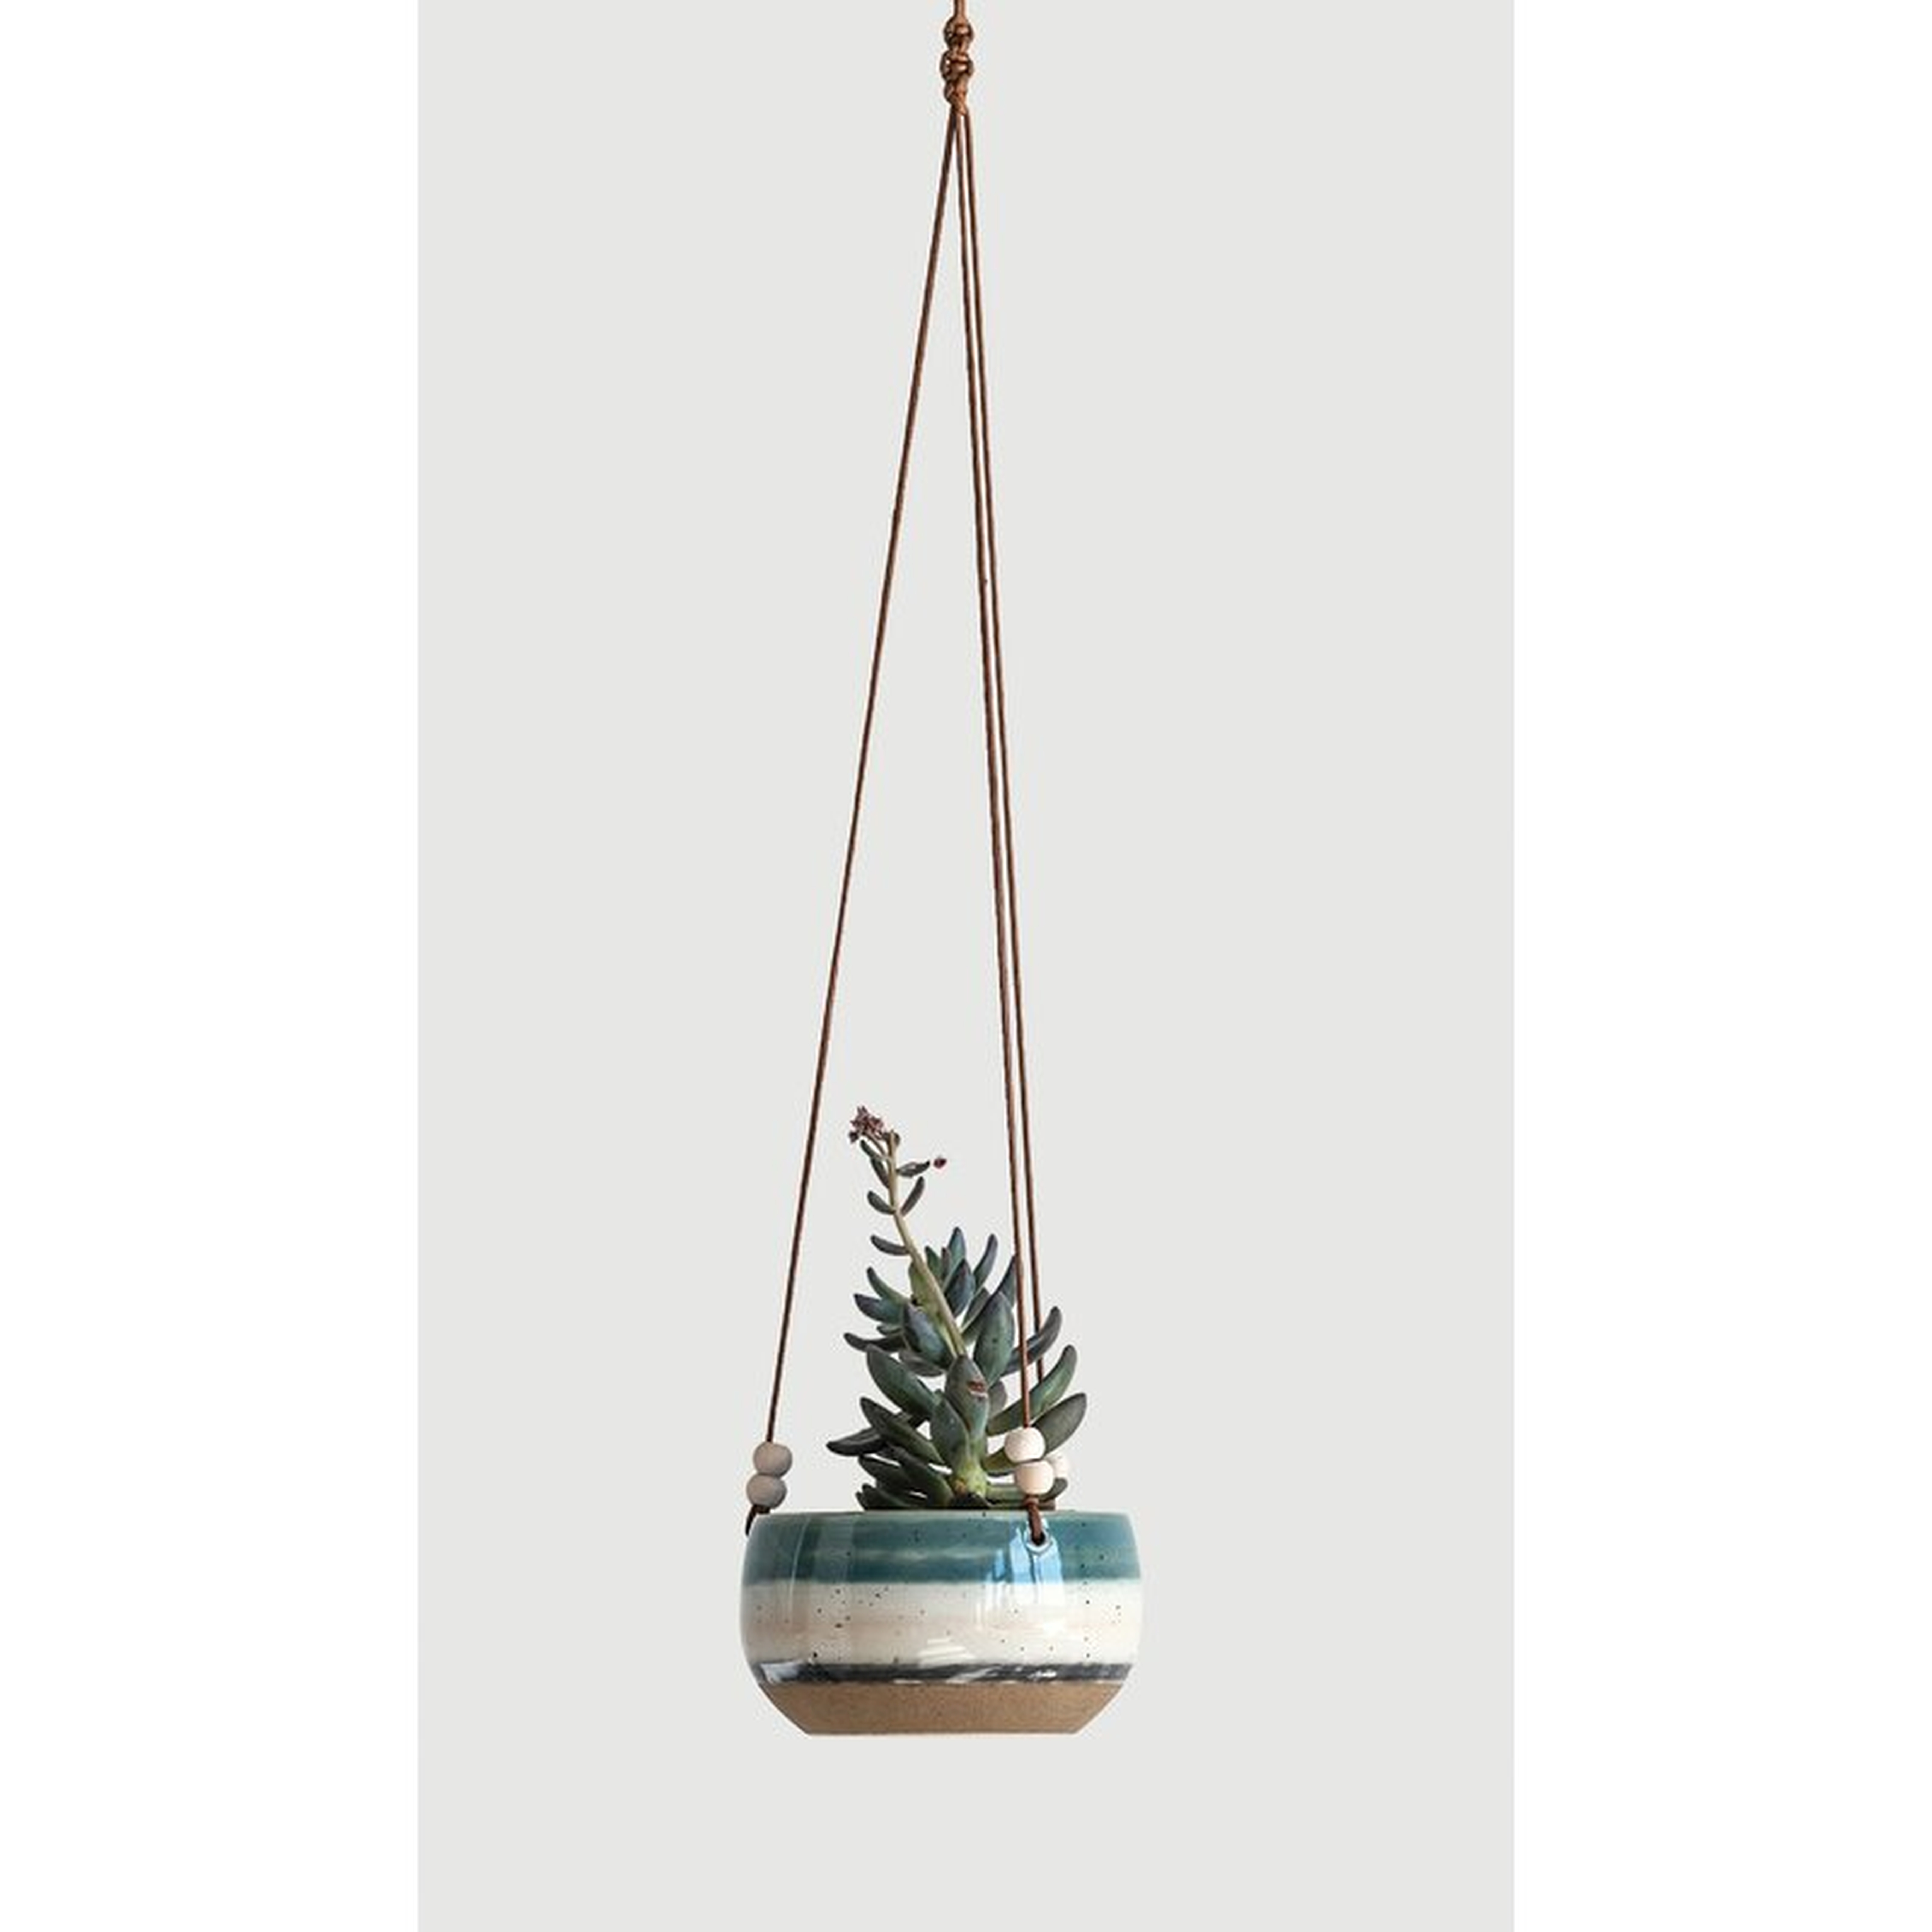 Keeble Striped Hanging Ceramic Hanging Planter - Wayfair